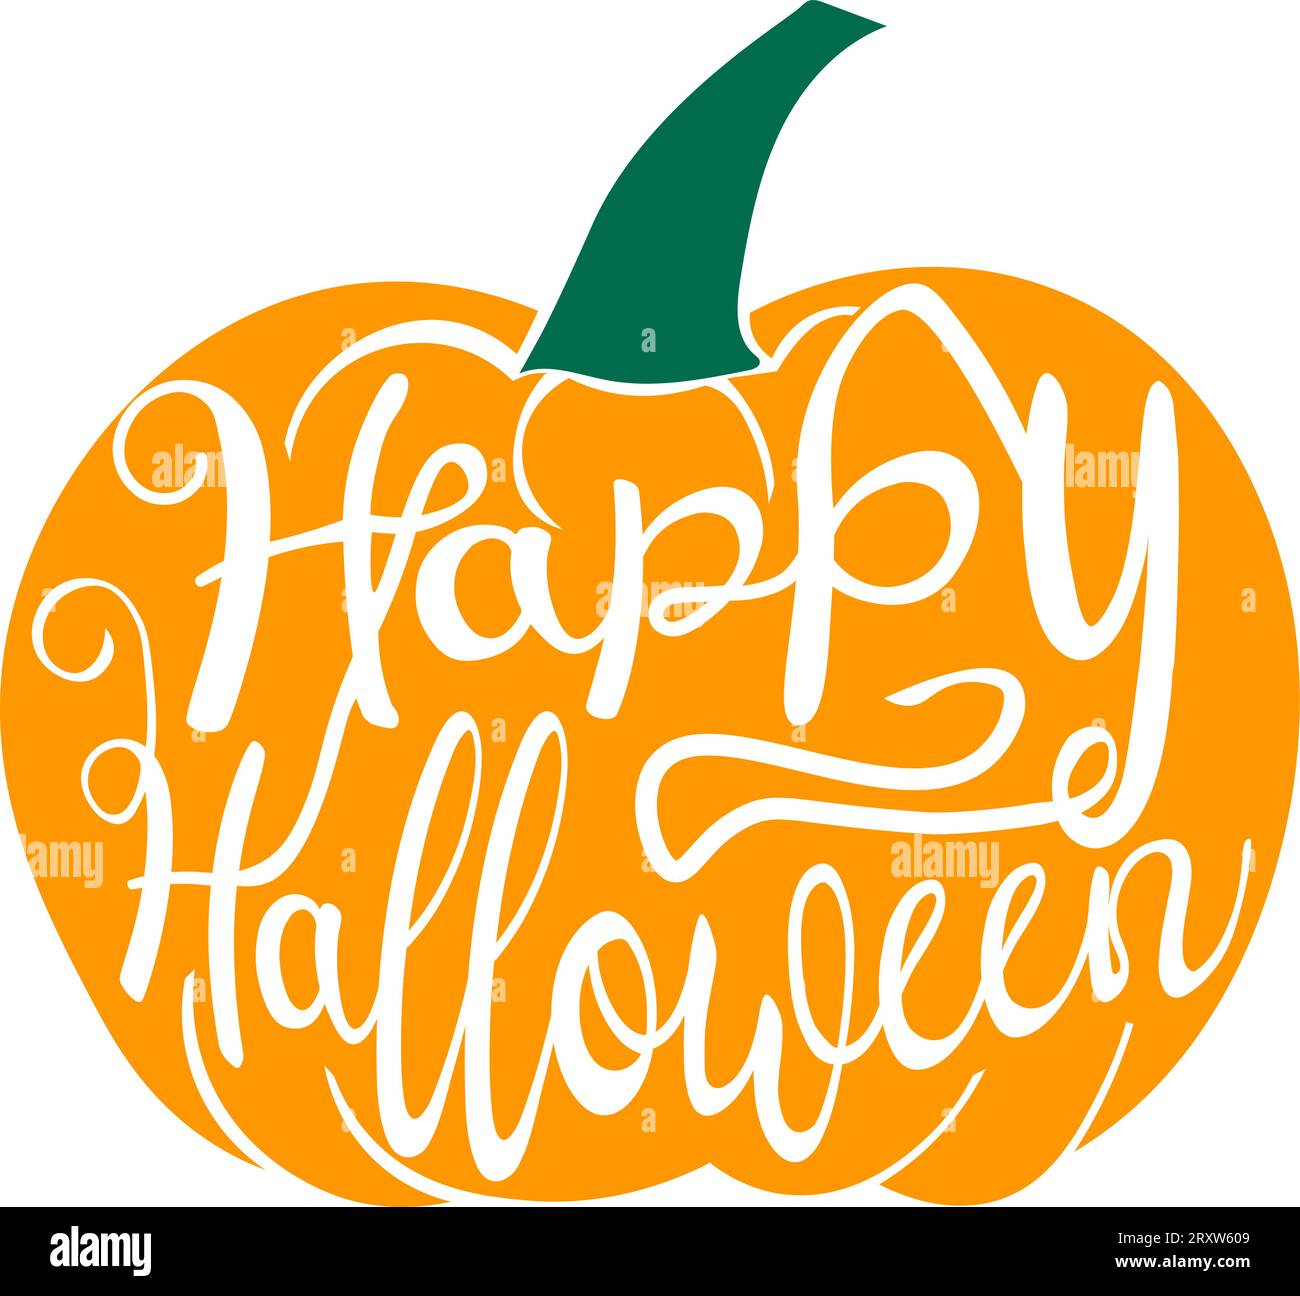 Carte de voeux avec typographie stylisée Happy Halloween sculptée sur dessin de citrouille dans un style plat Illustration de Vecteur